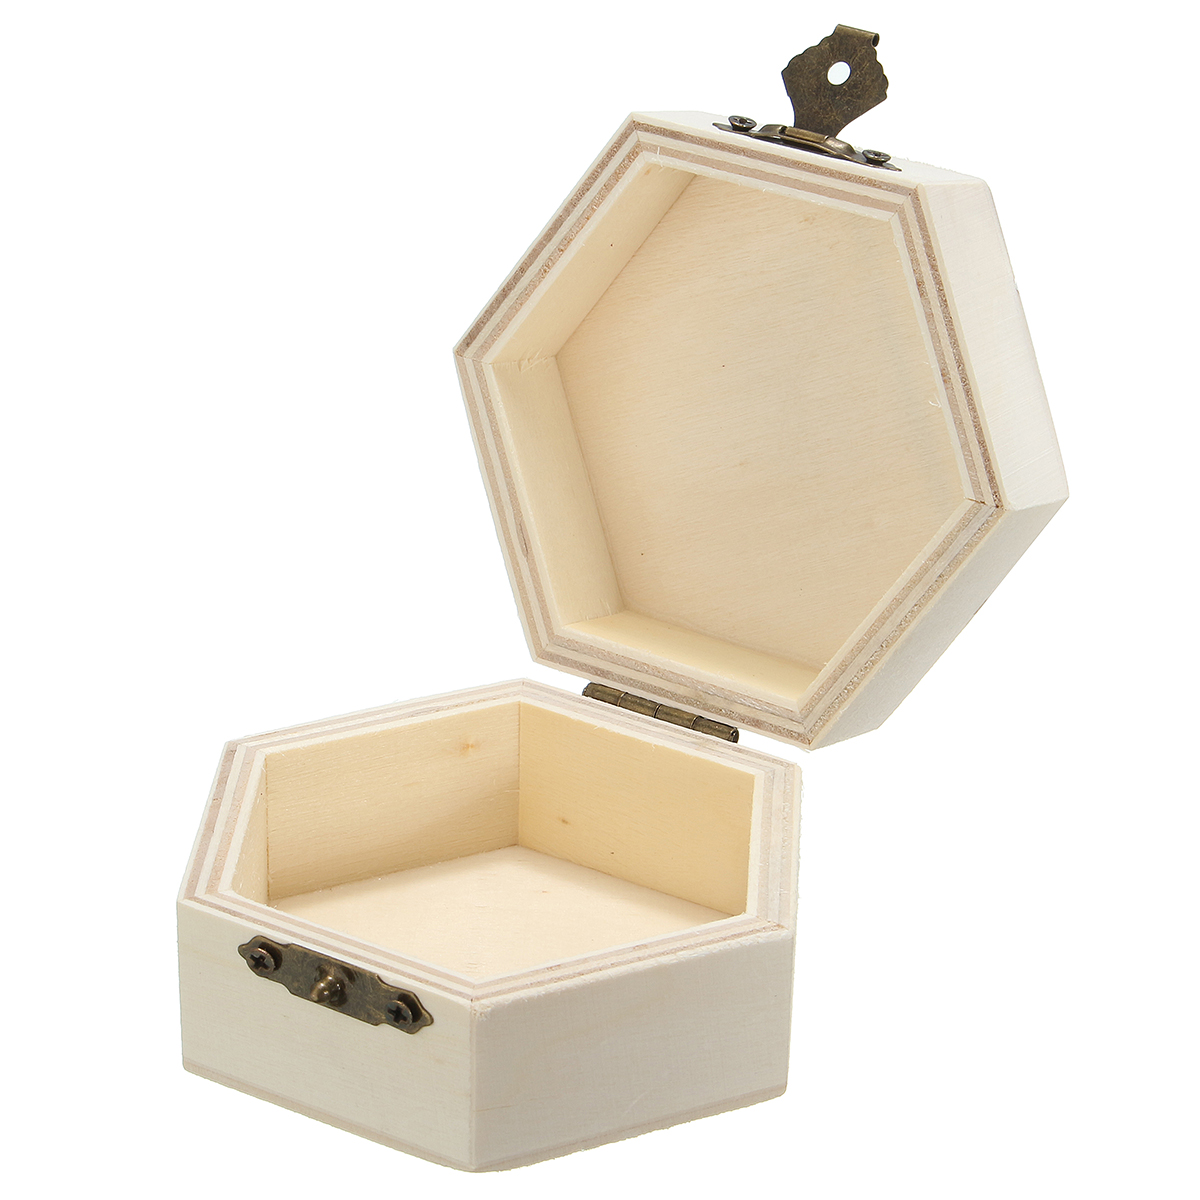 

Hex Wooden Box Organizer Storage Craft Case for Handicraft Jewelry Home